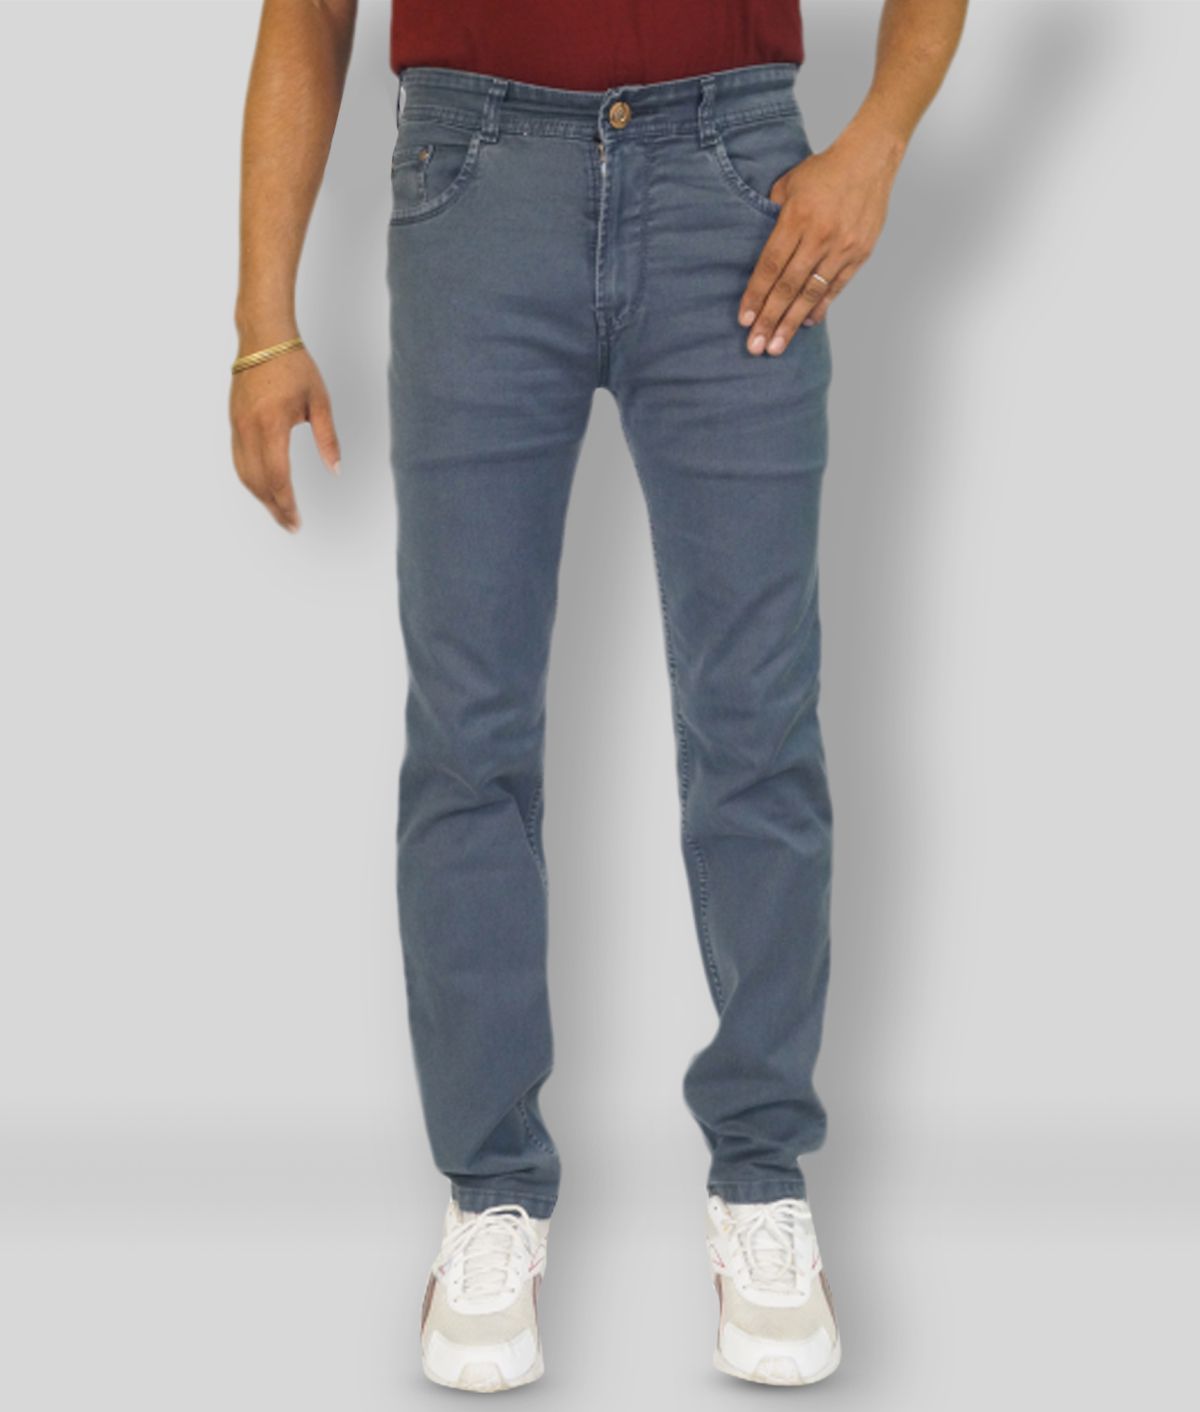 plounge - Grey Cotton Blend Regular Fit Men's Jeans ( Pack of 1 )